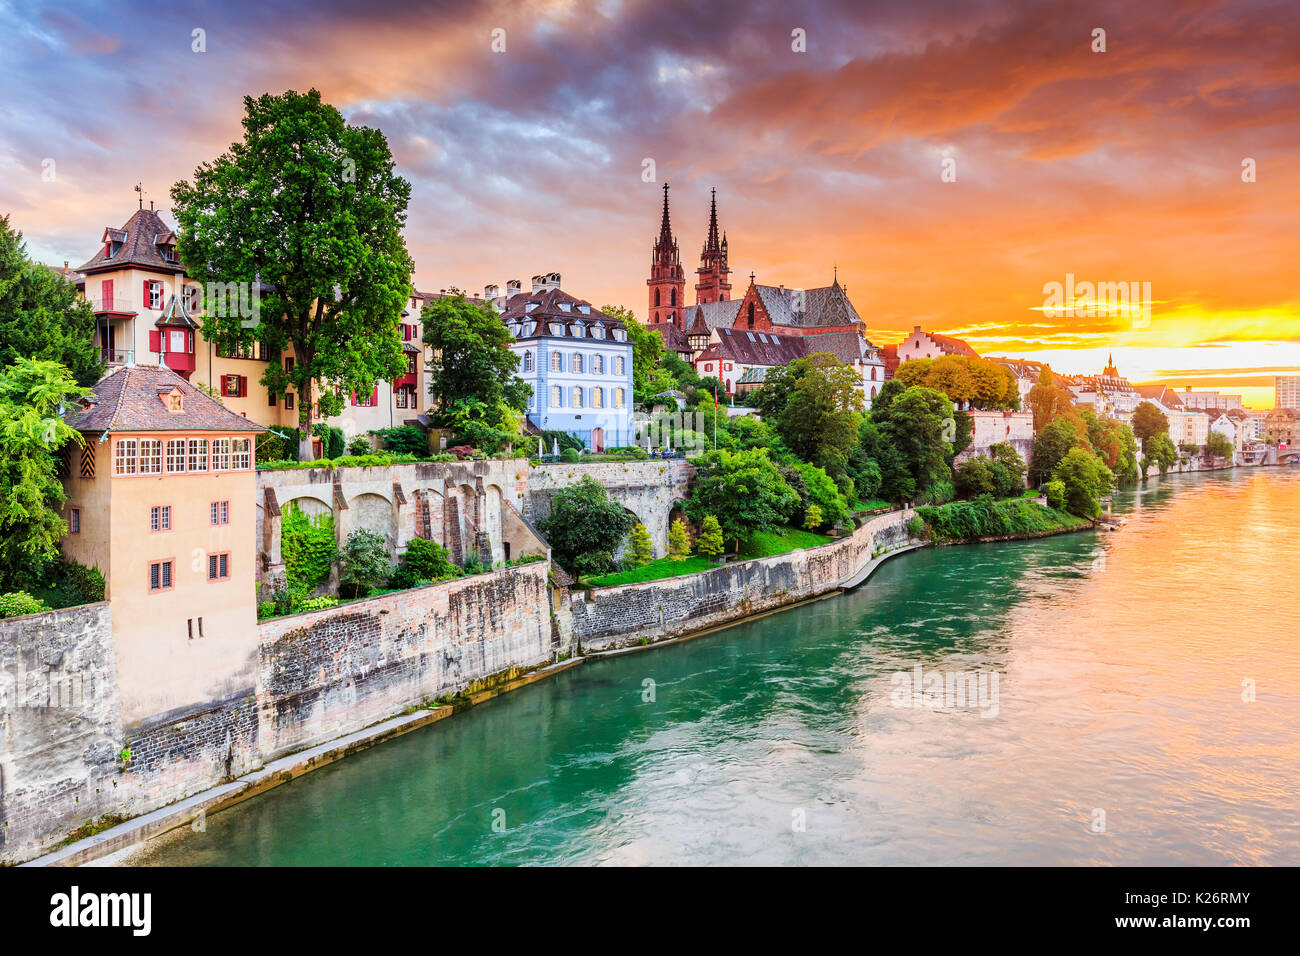 Bâle, Suisse. Vieille ville avec la cathédrale de Munster en pierre rouge sur le Rhin. Banque D'Images